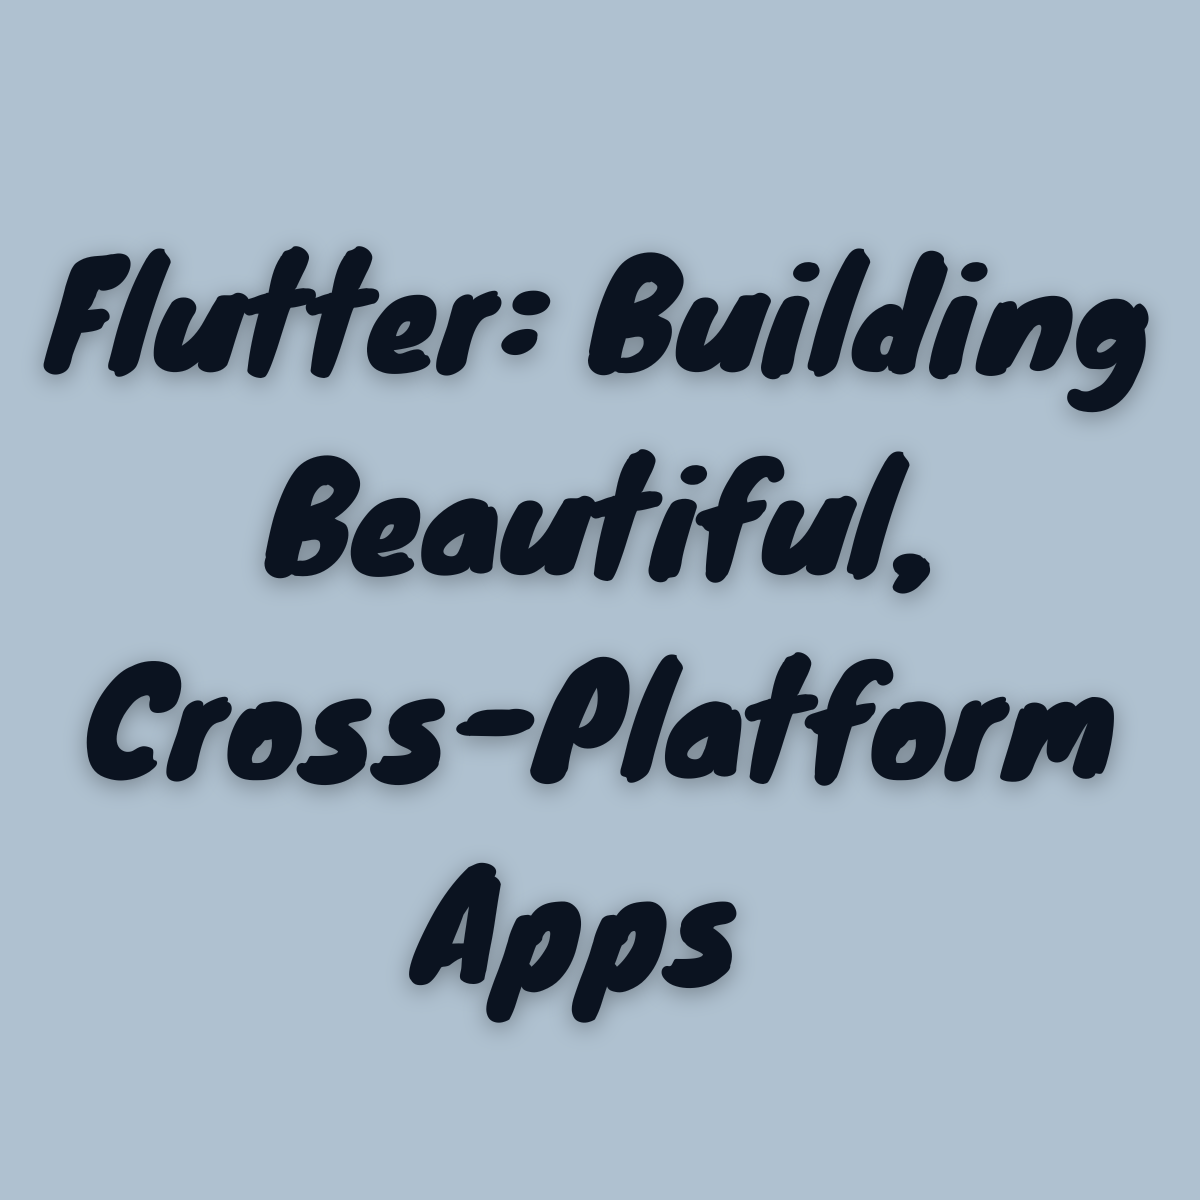 Flutter: Building Beautiful, Cross-Platform Apps